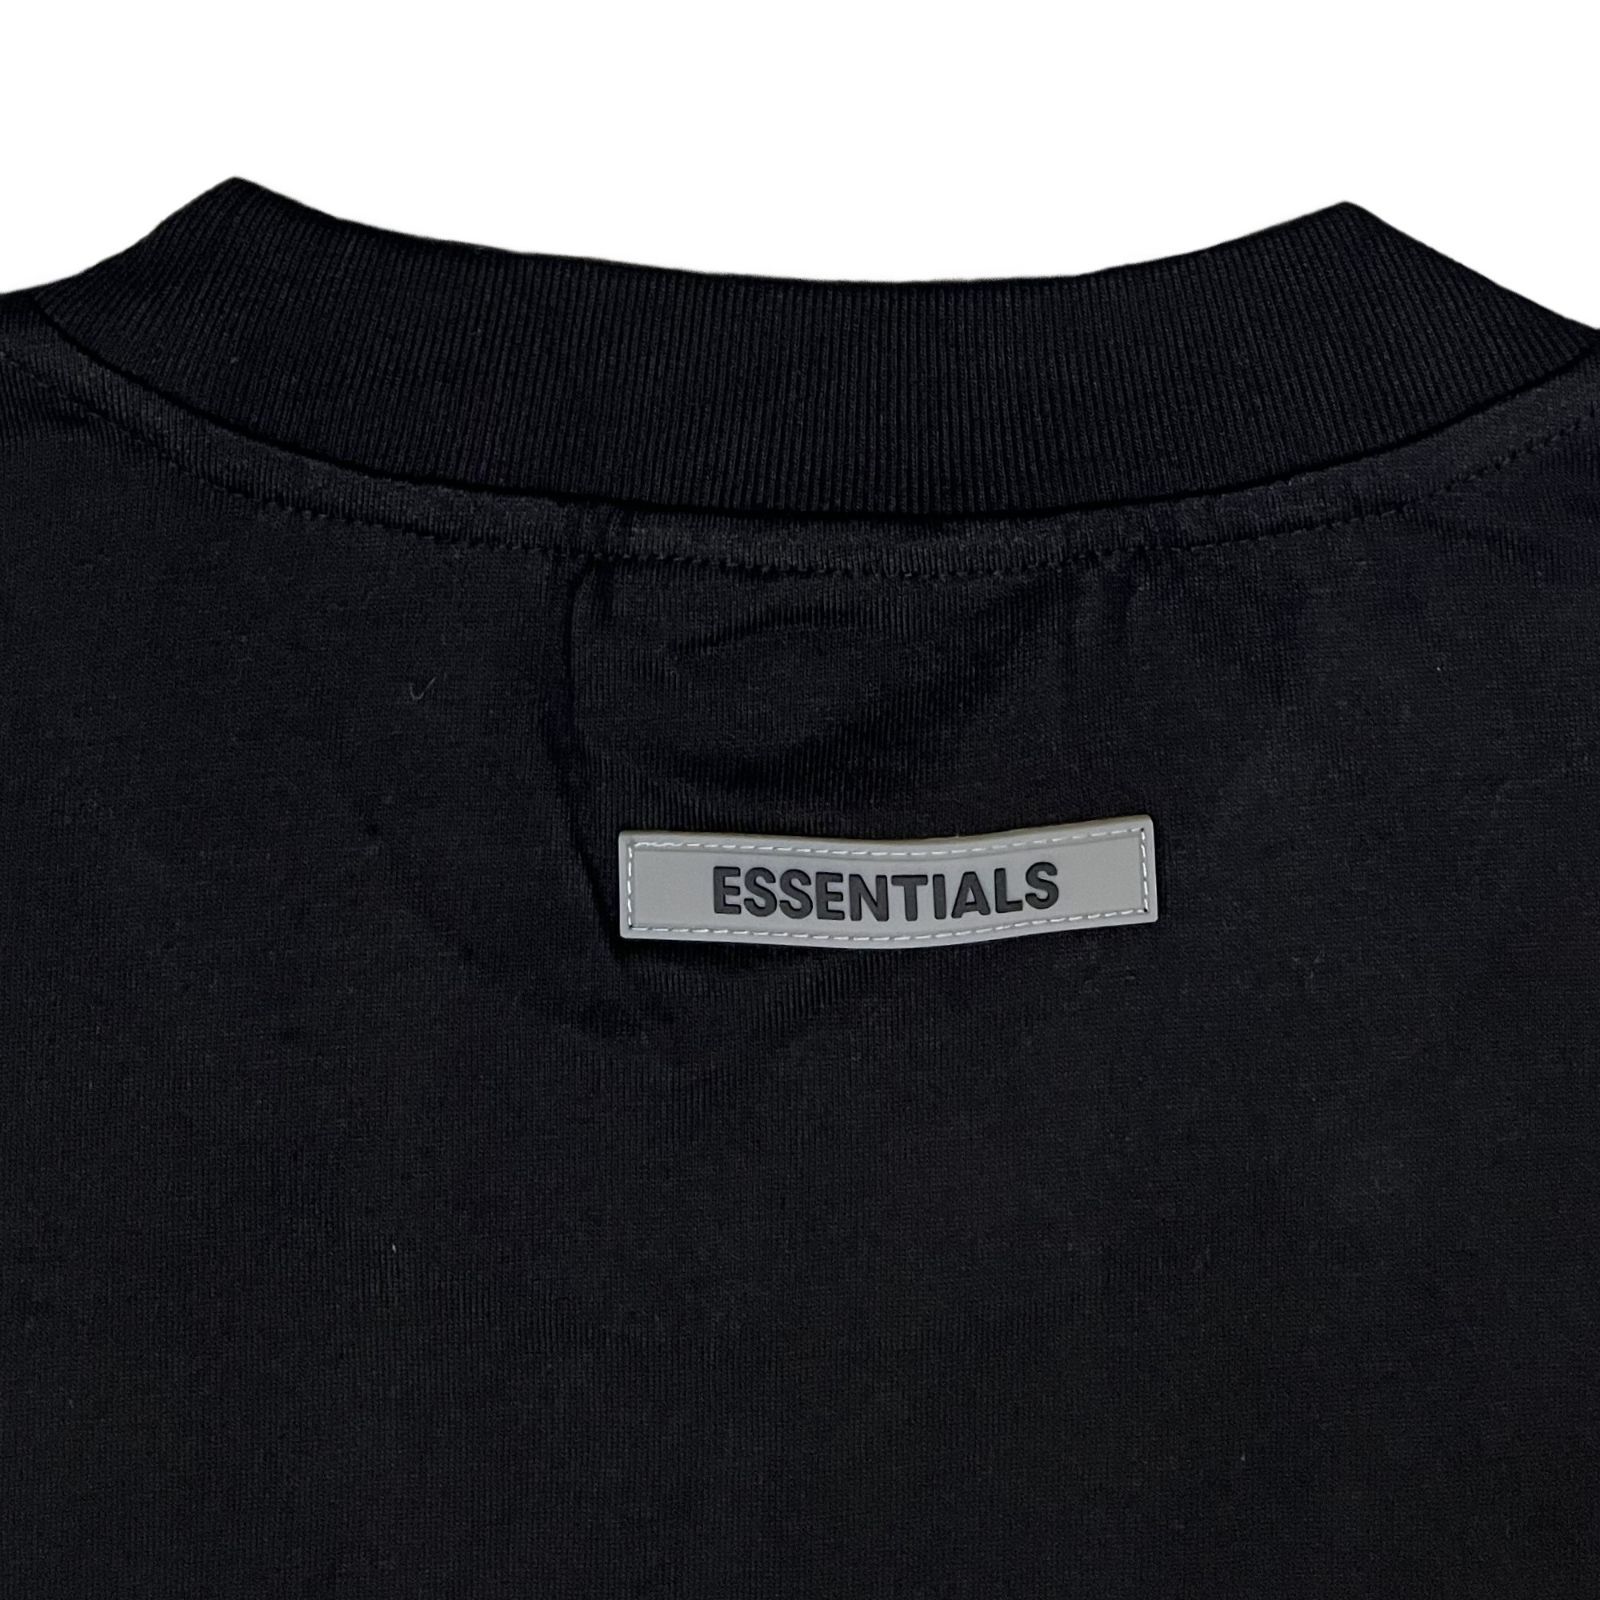 FOG エッセンシャルズ フロント 3Dロゴ 半袖 Tシャツ ブラック S